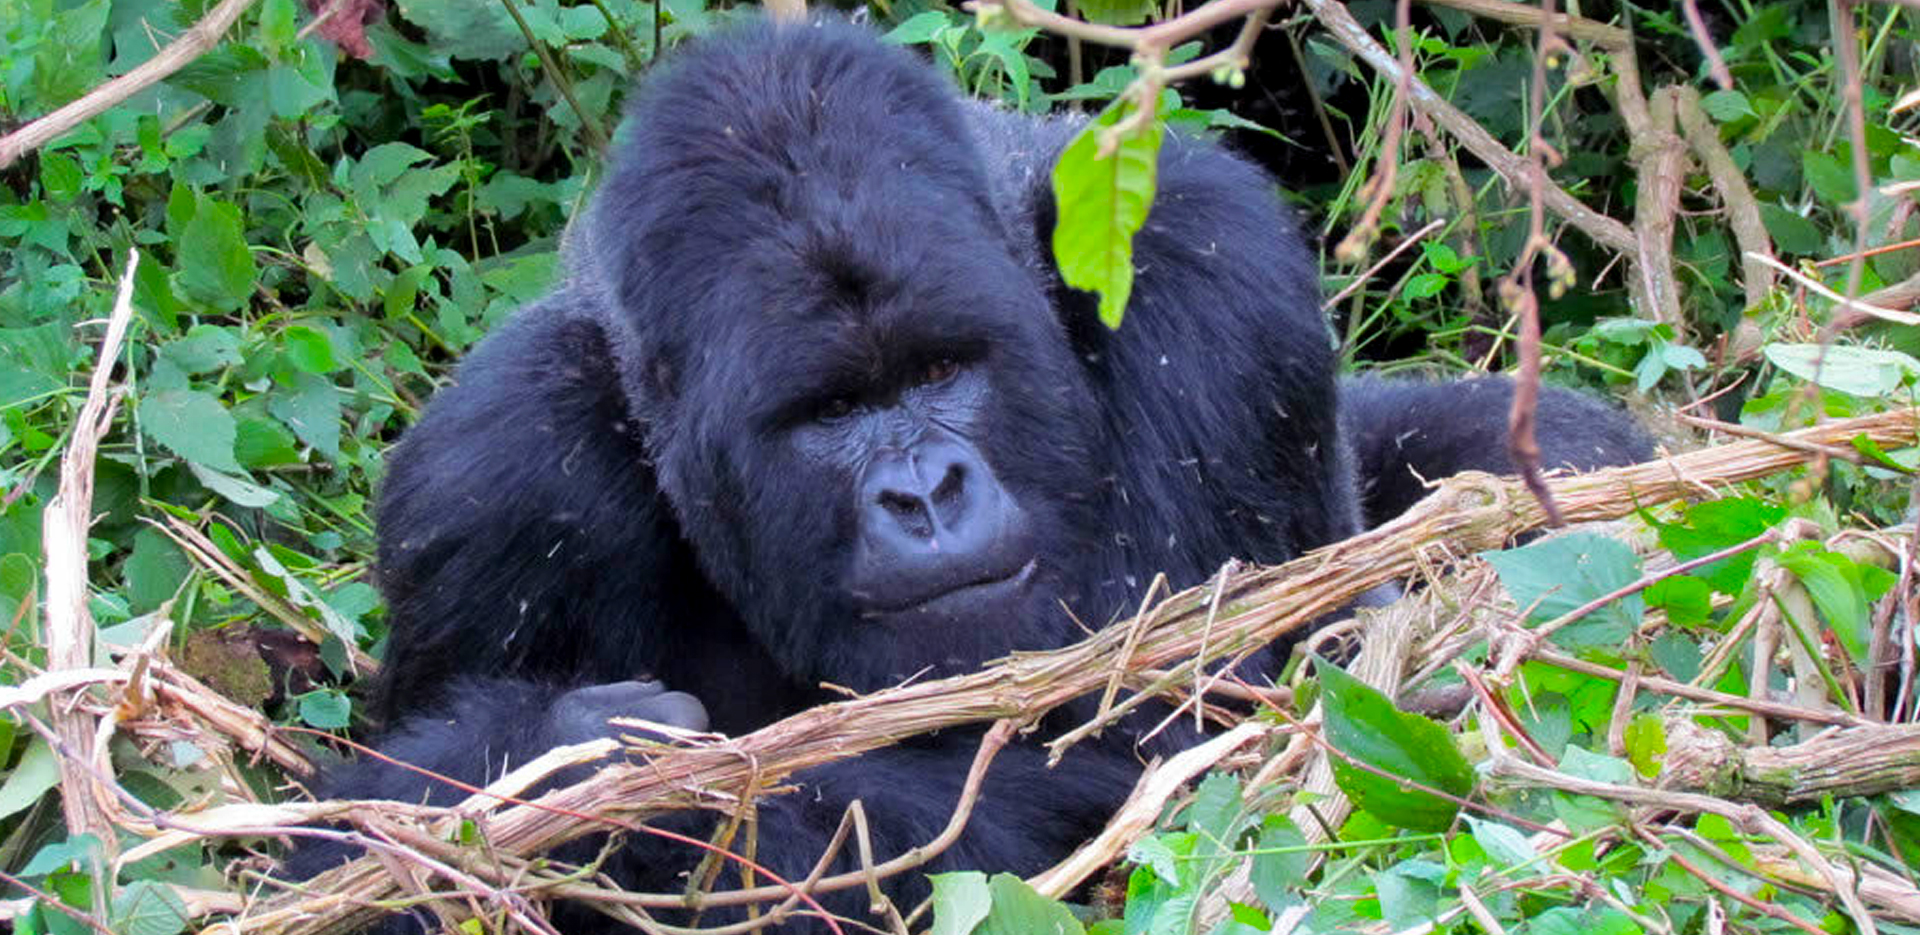 Best Time to go for Gorilla trekking in Uganda